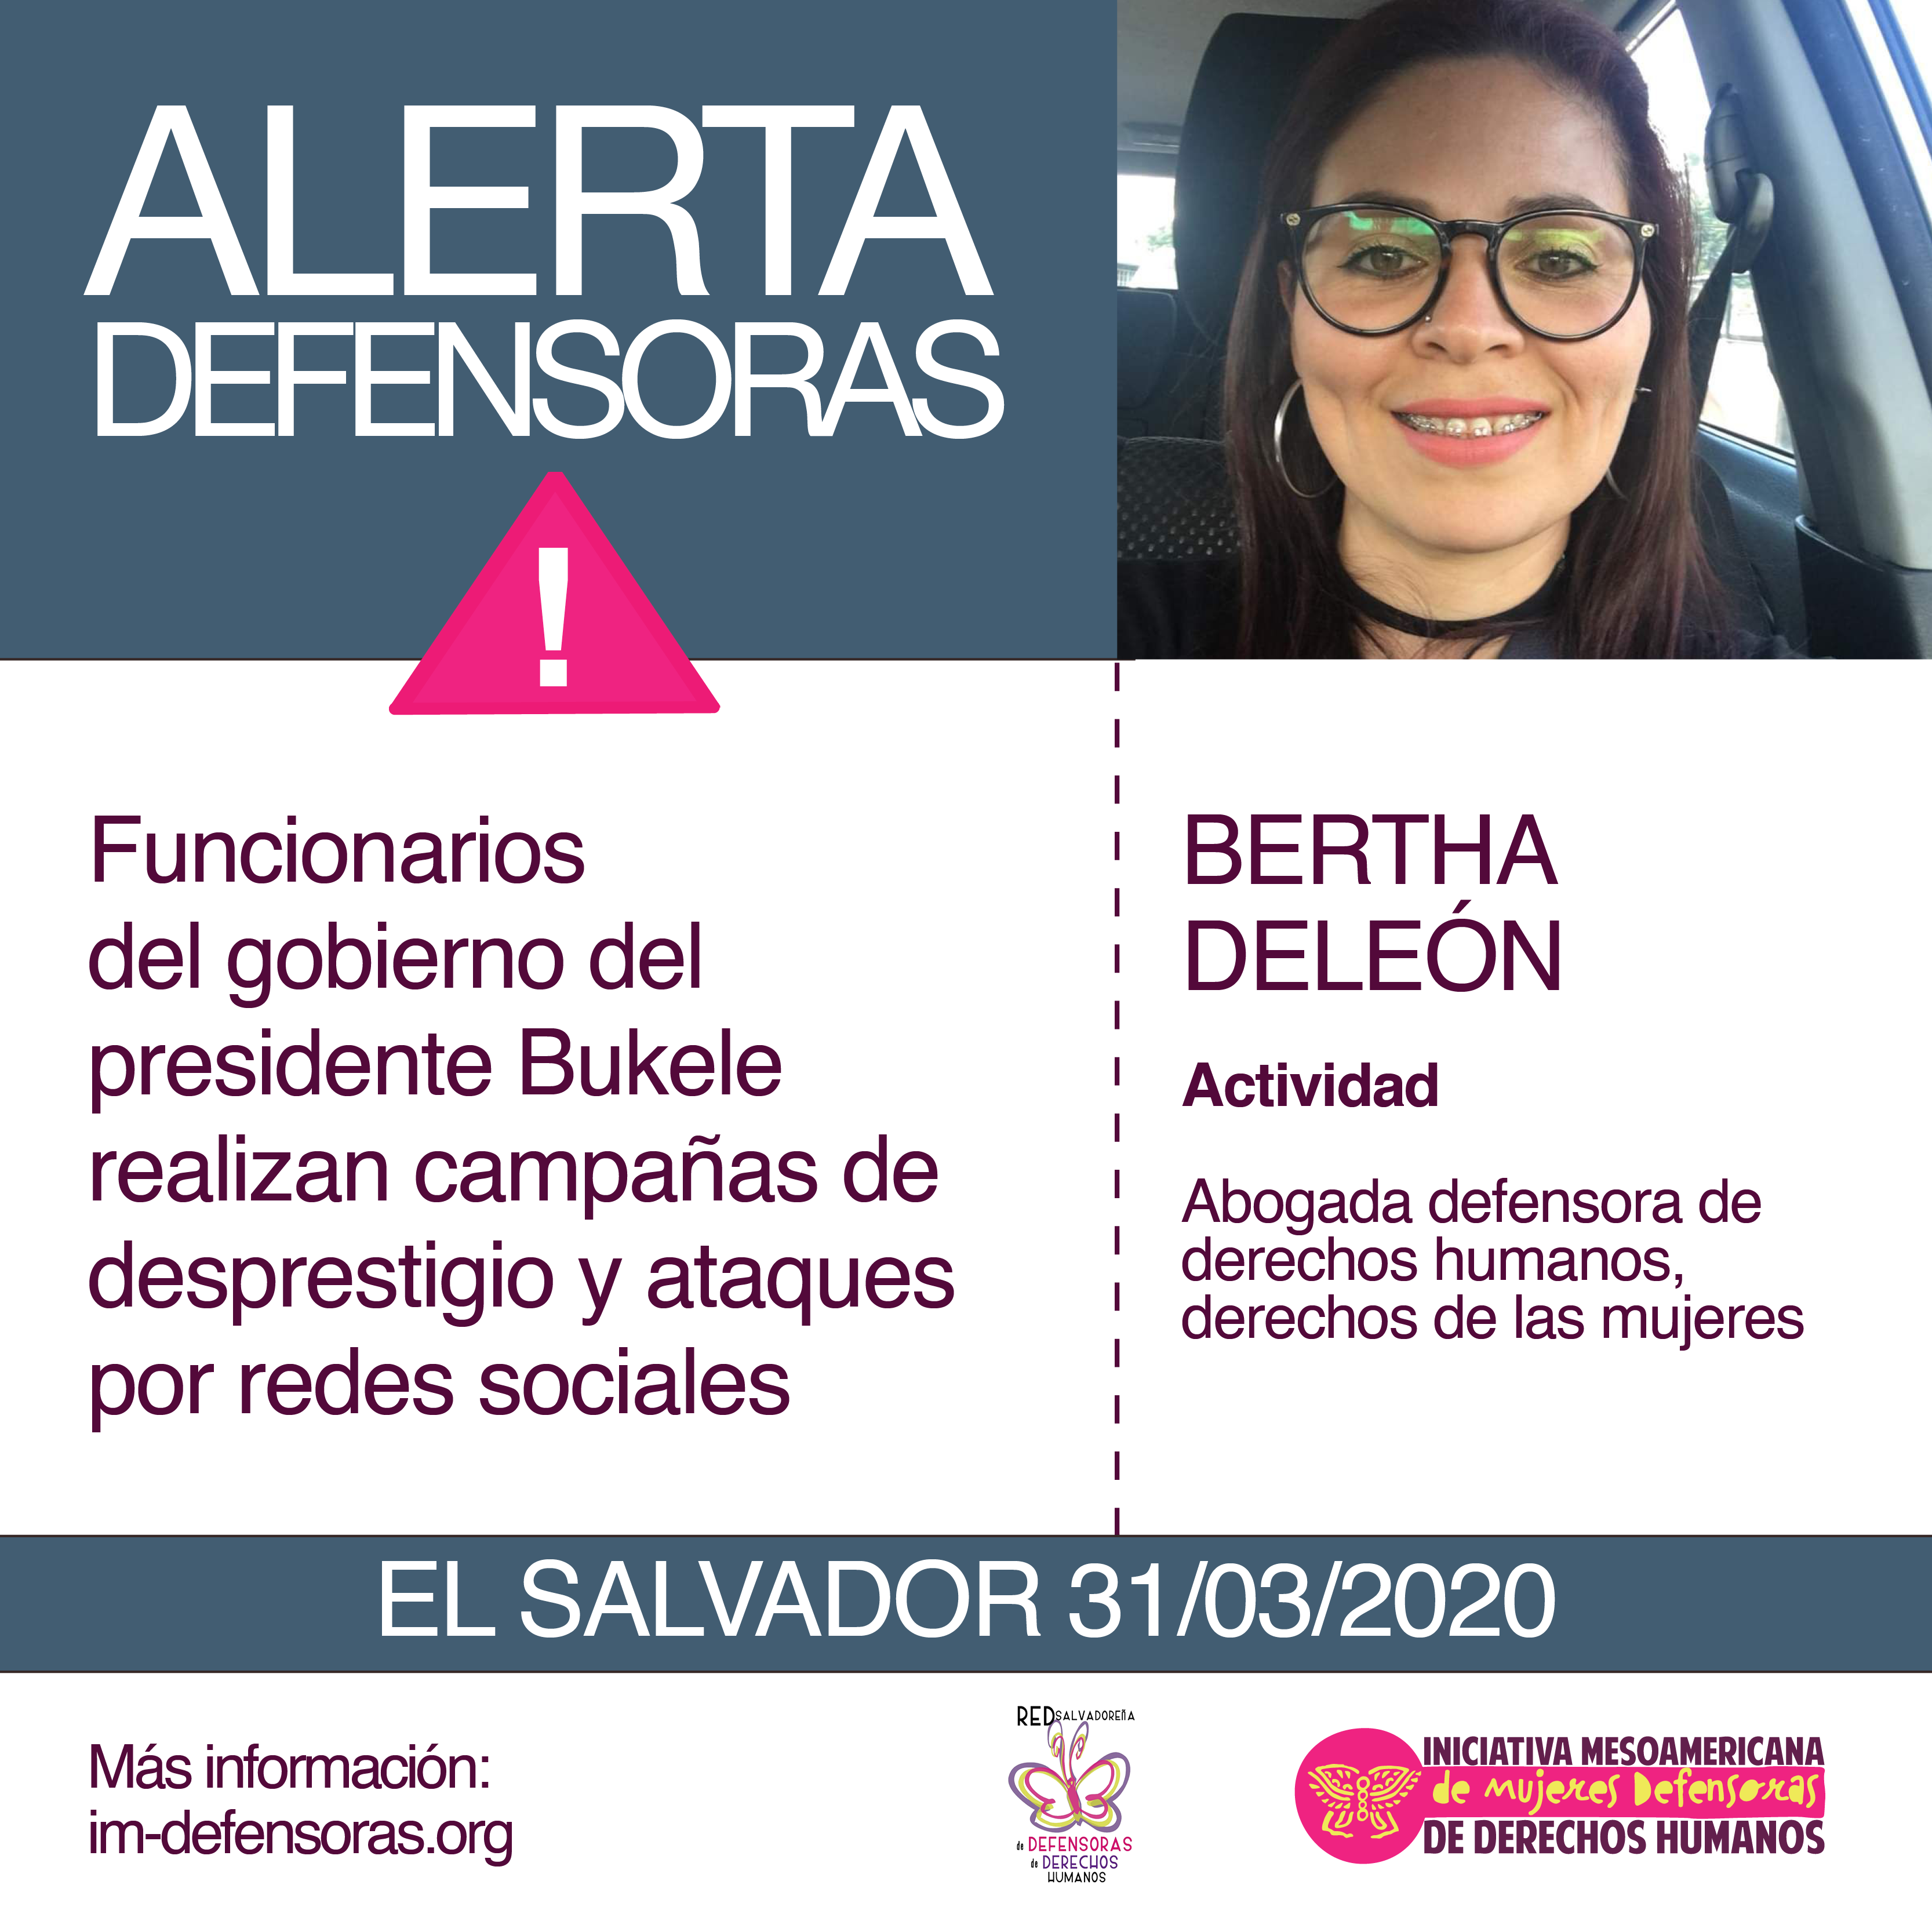 Bertha Deleon